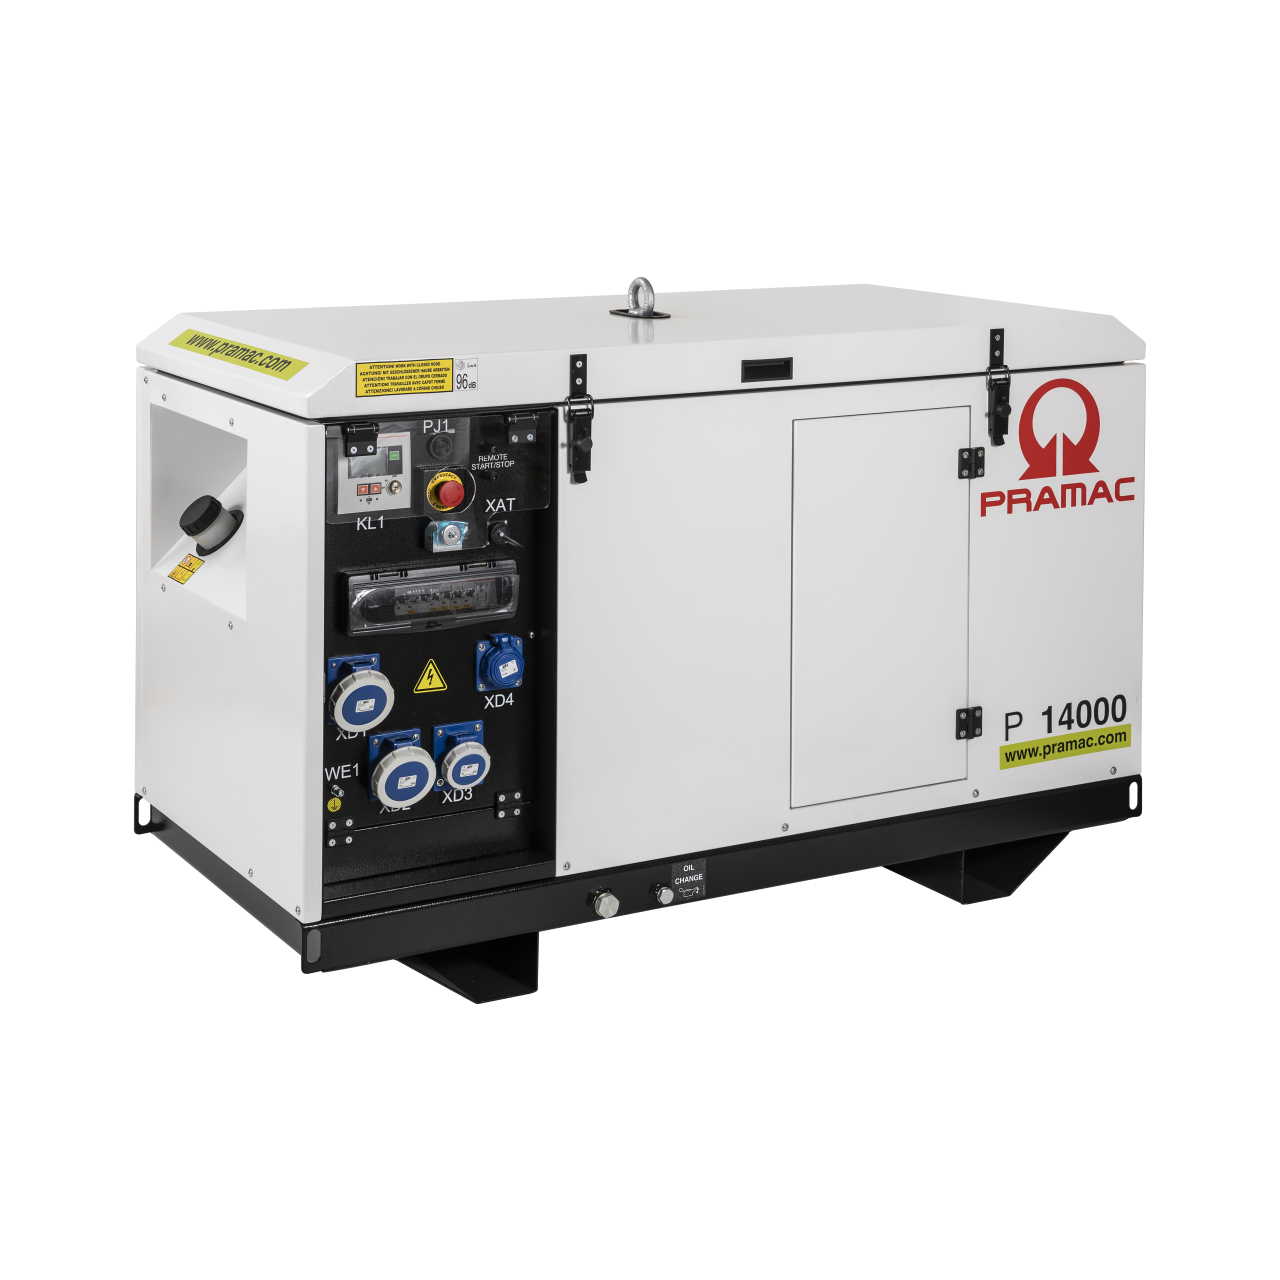 Stromerzeuger P 14000 - SYA ISO AVR+MRS+CON+PHS+DPP 230V - DIESEL - E START